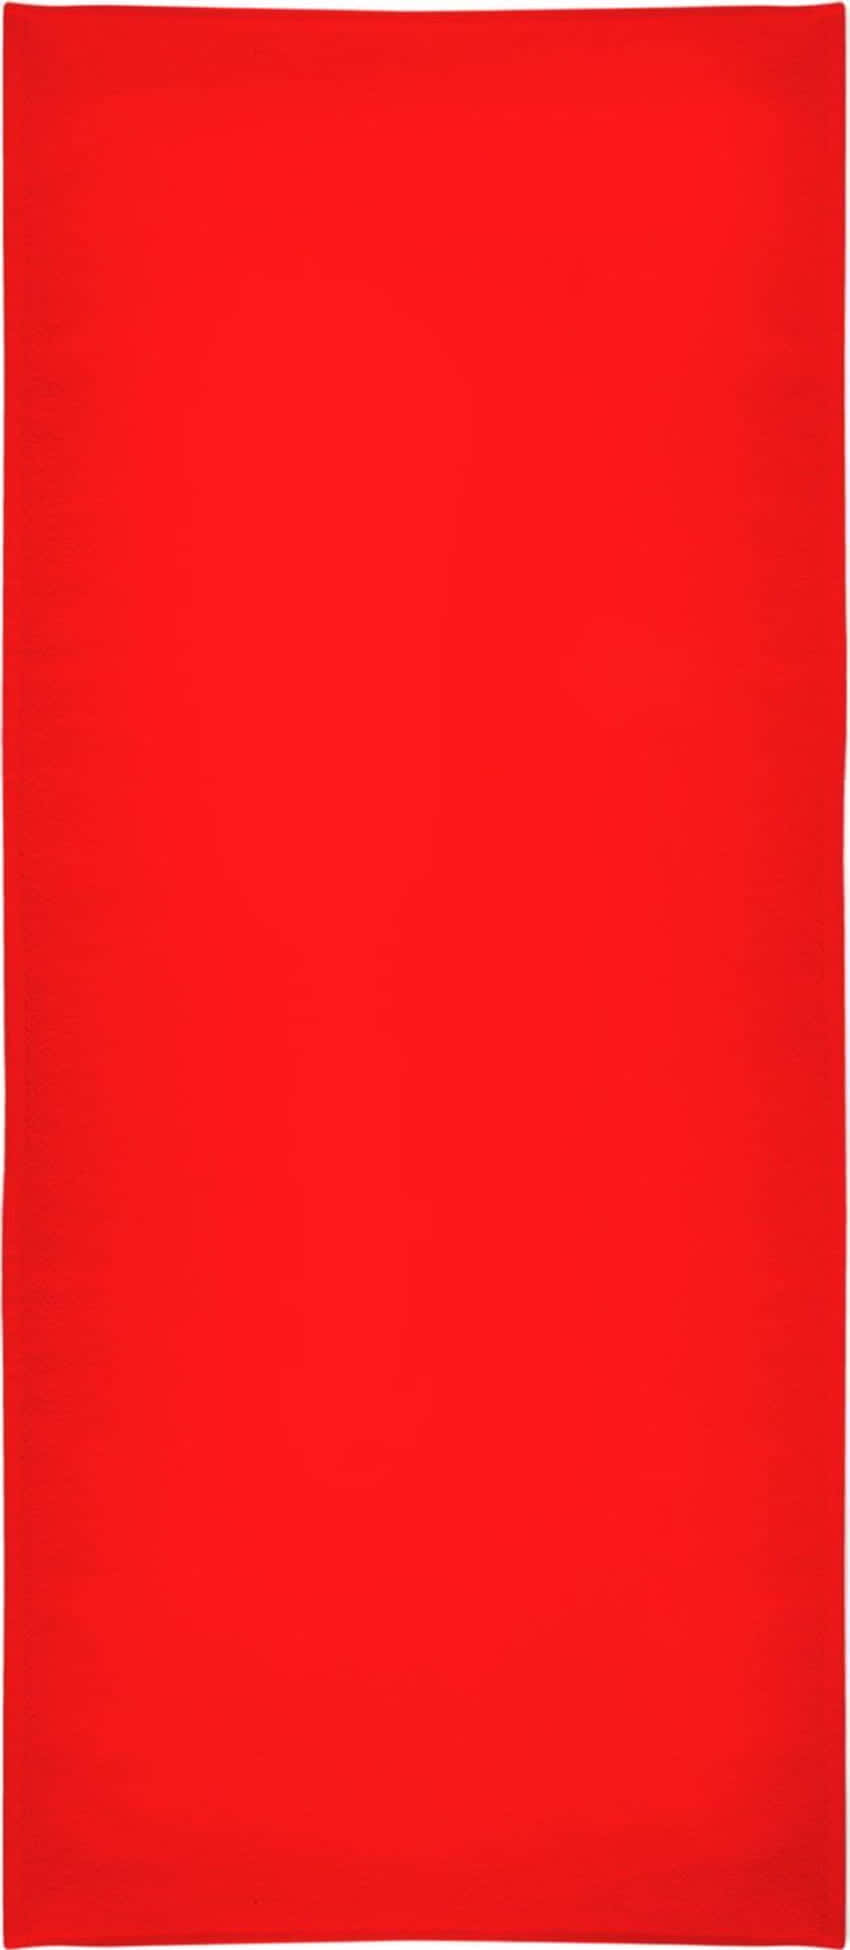 Enensfarvet Rød Baggrund På 850 X 1950 Pixels.